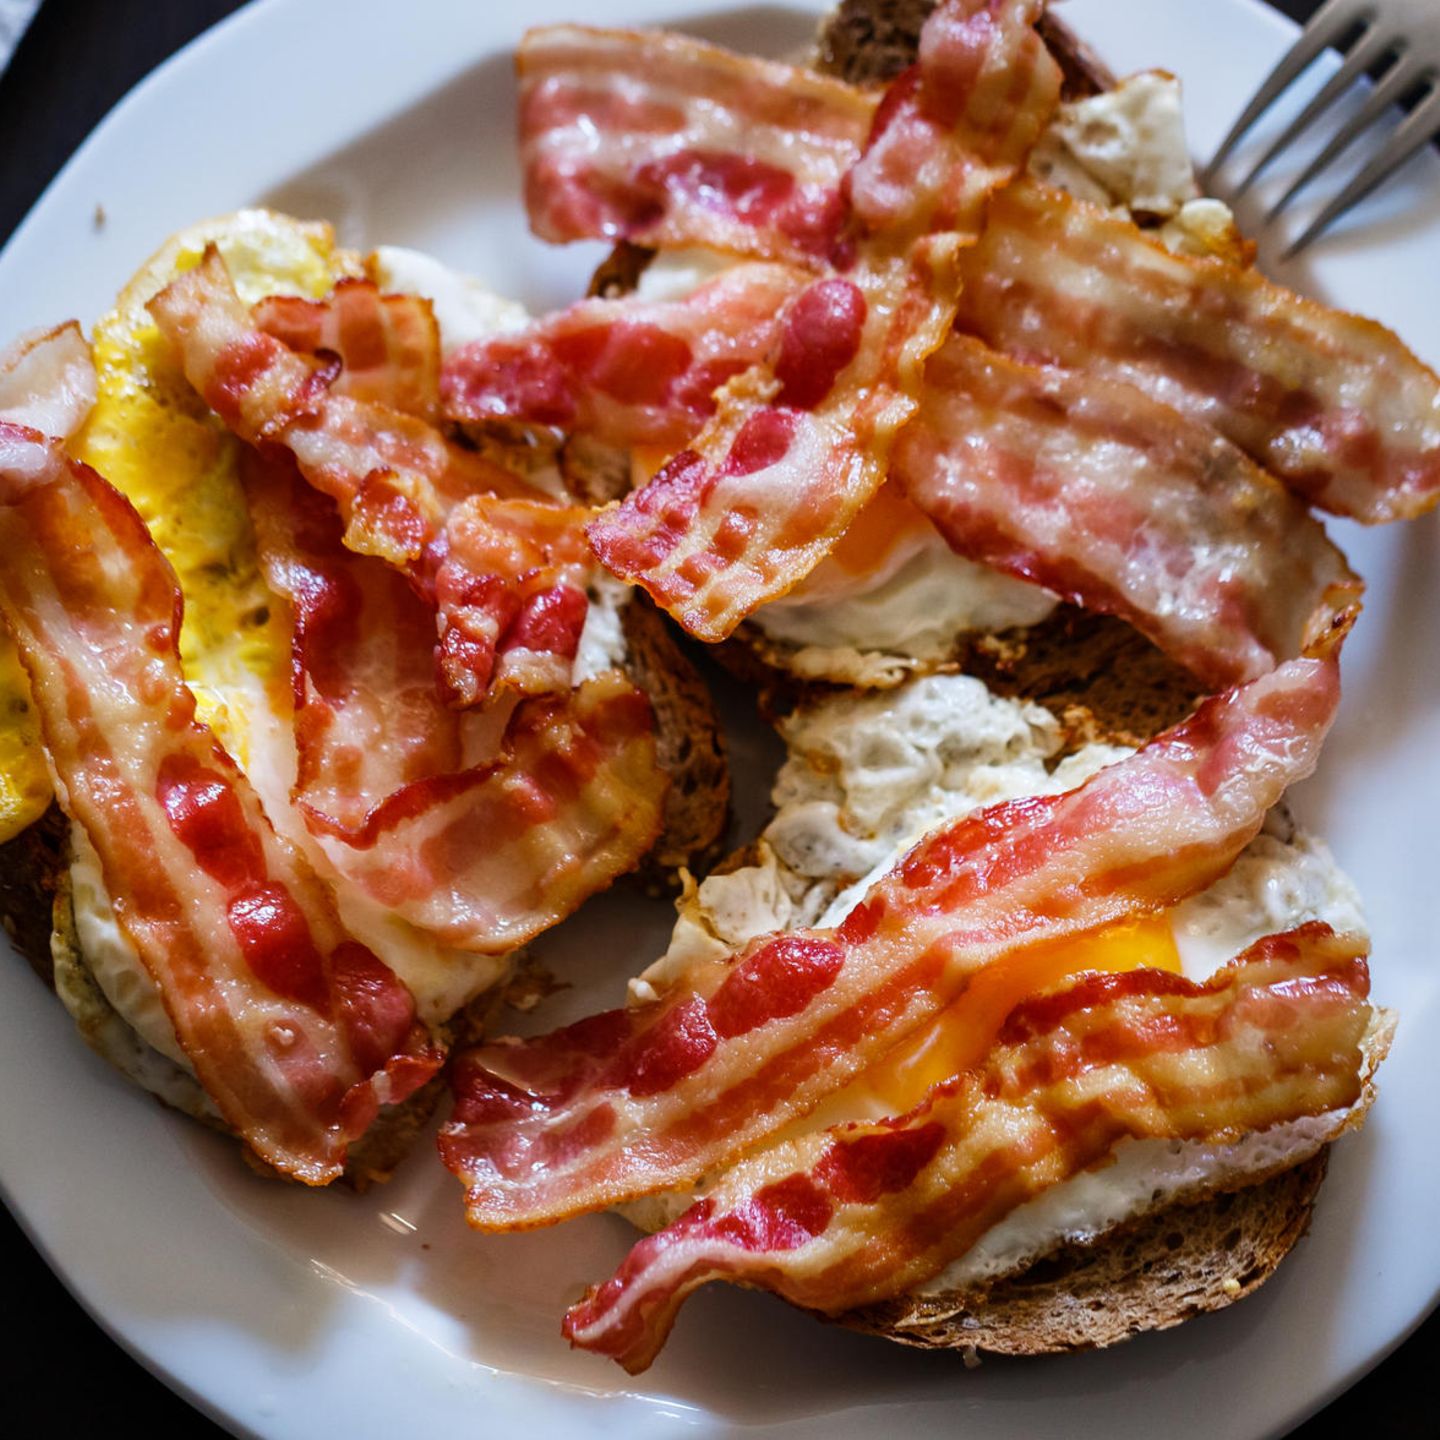 Brot mit Bacon und Ei